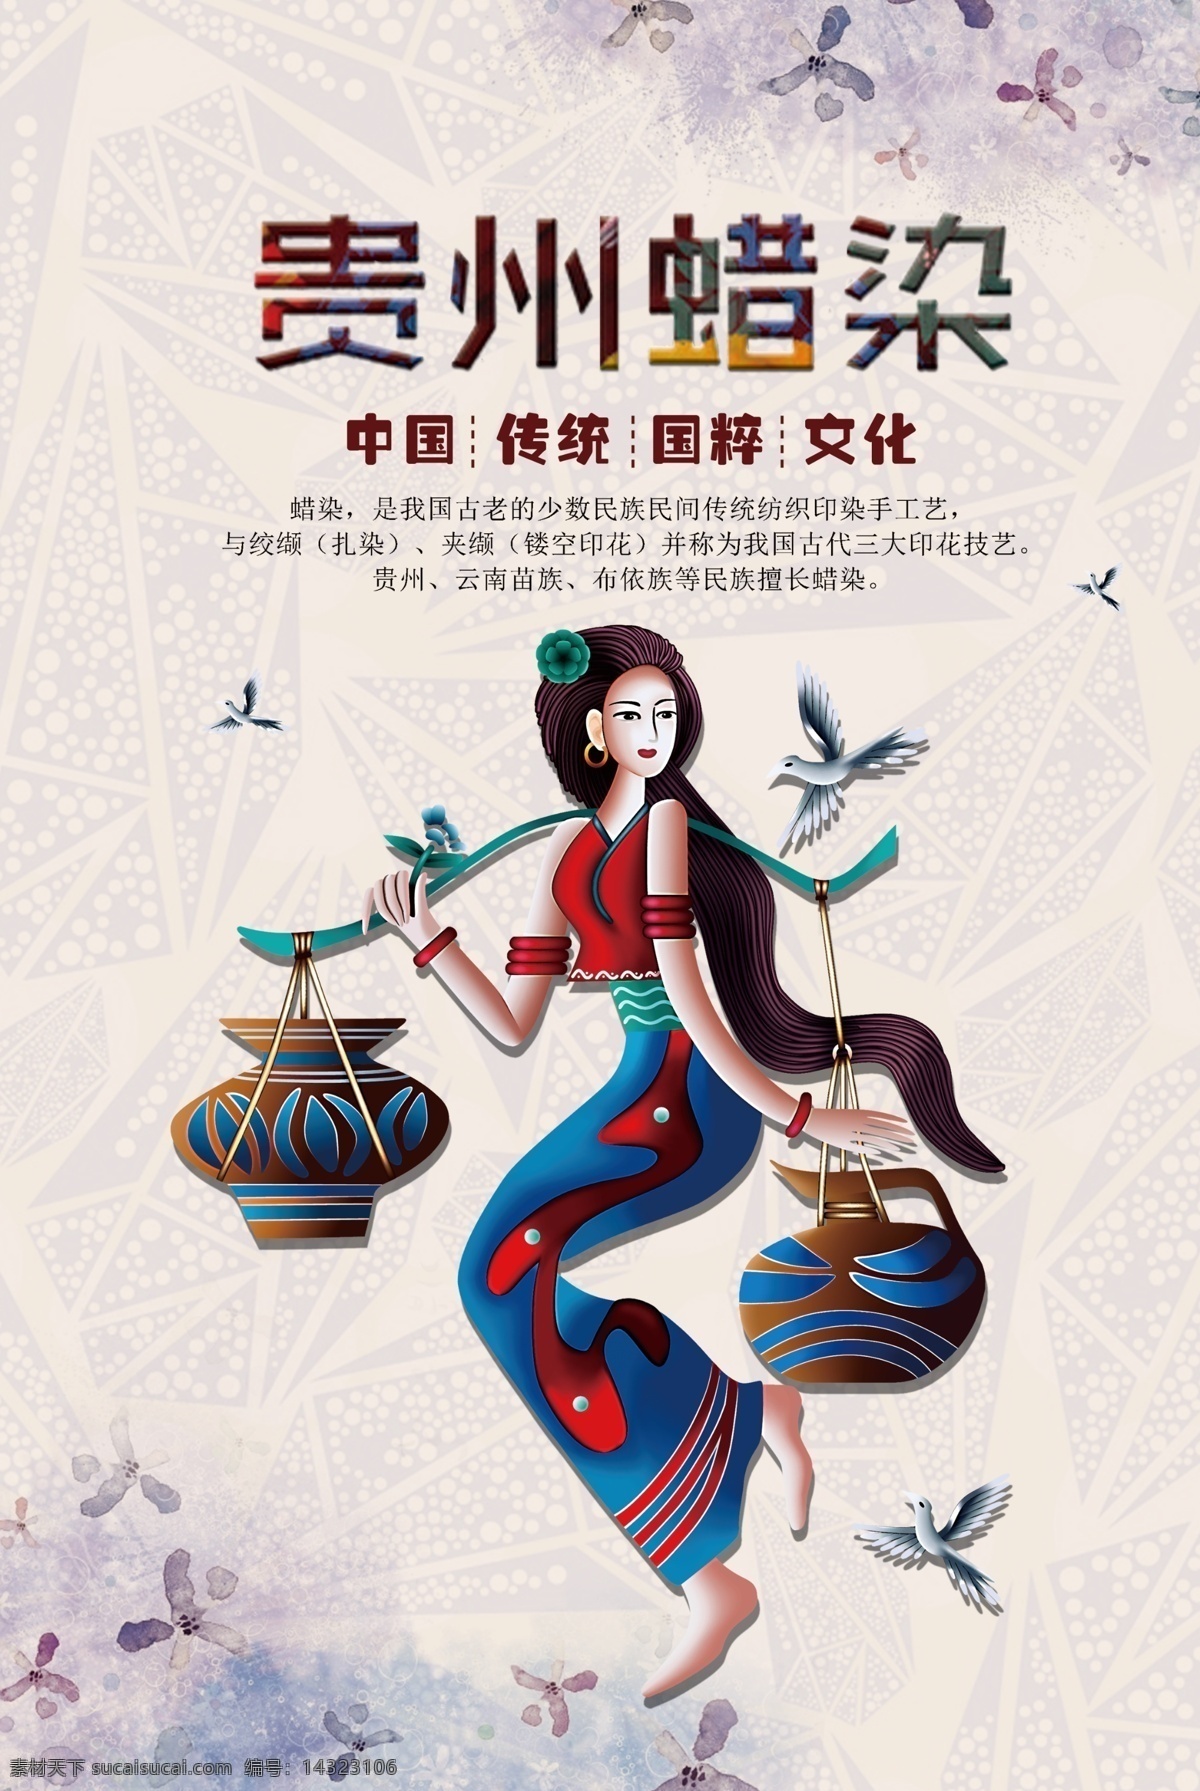 贵州 蜡染 传统 公益 宣传海报 贵州蜡染 宣传 海报